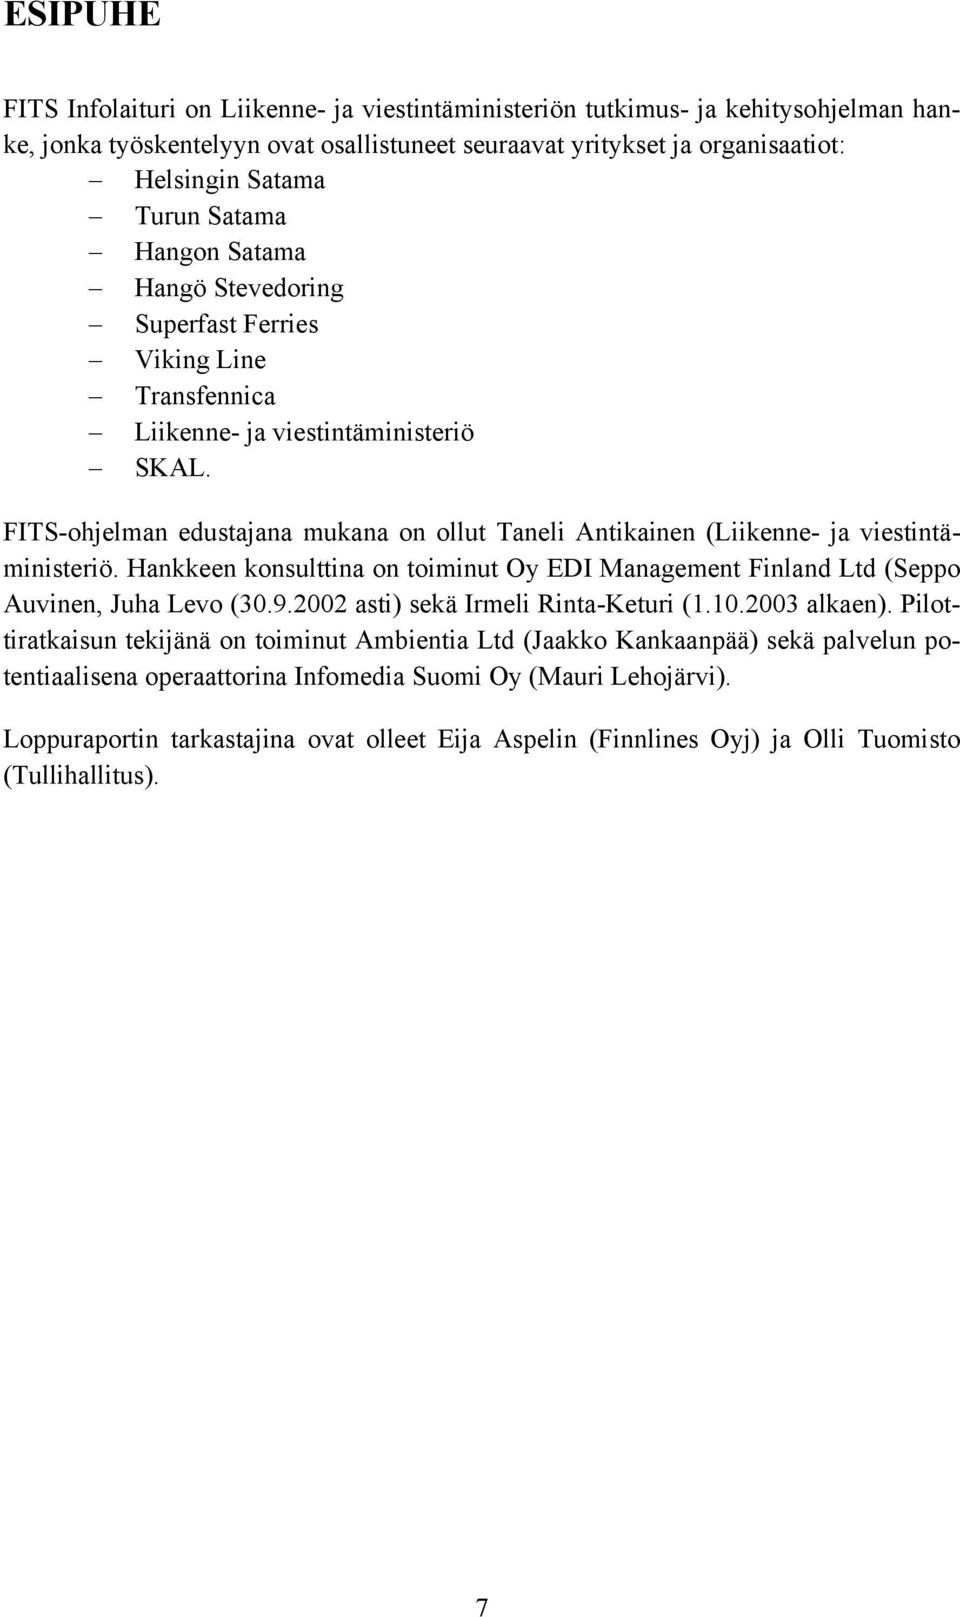 FITS-ohjelman edustajana mukana on ollut Taneli Antikainen (Liikenne- ja viestintäministeriö. Hankkeen konsulttina on toiminut Oy EDI Management Finland Ltd (Seppo Auvinen, Juha Levo (30.9.